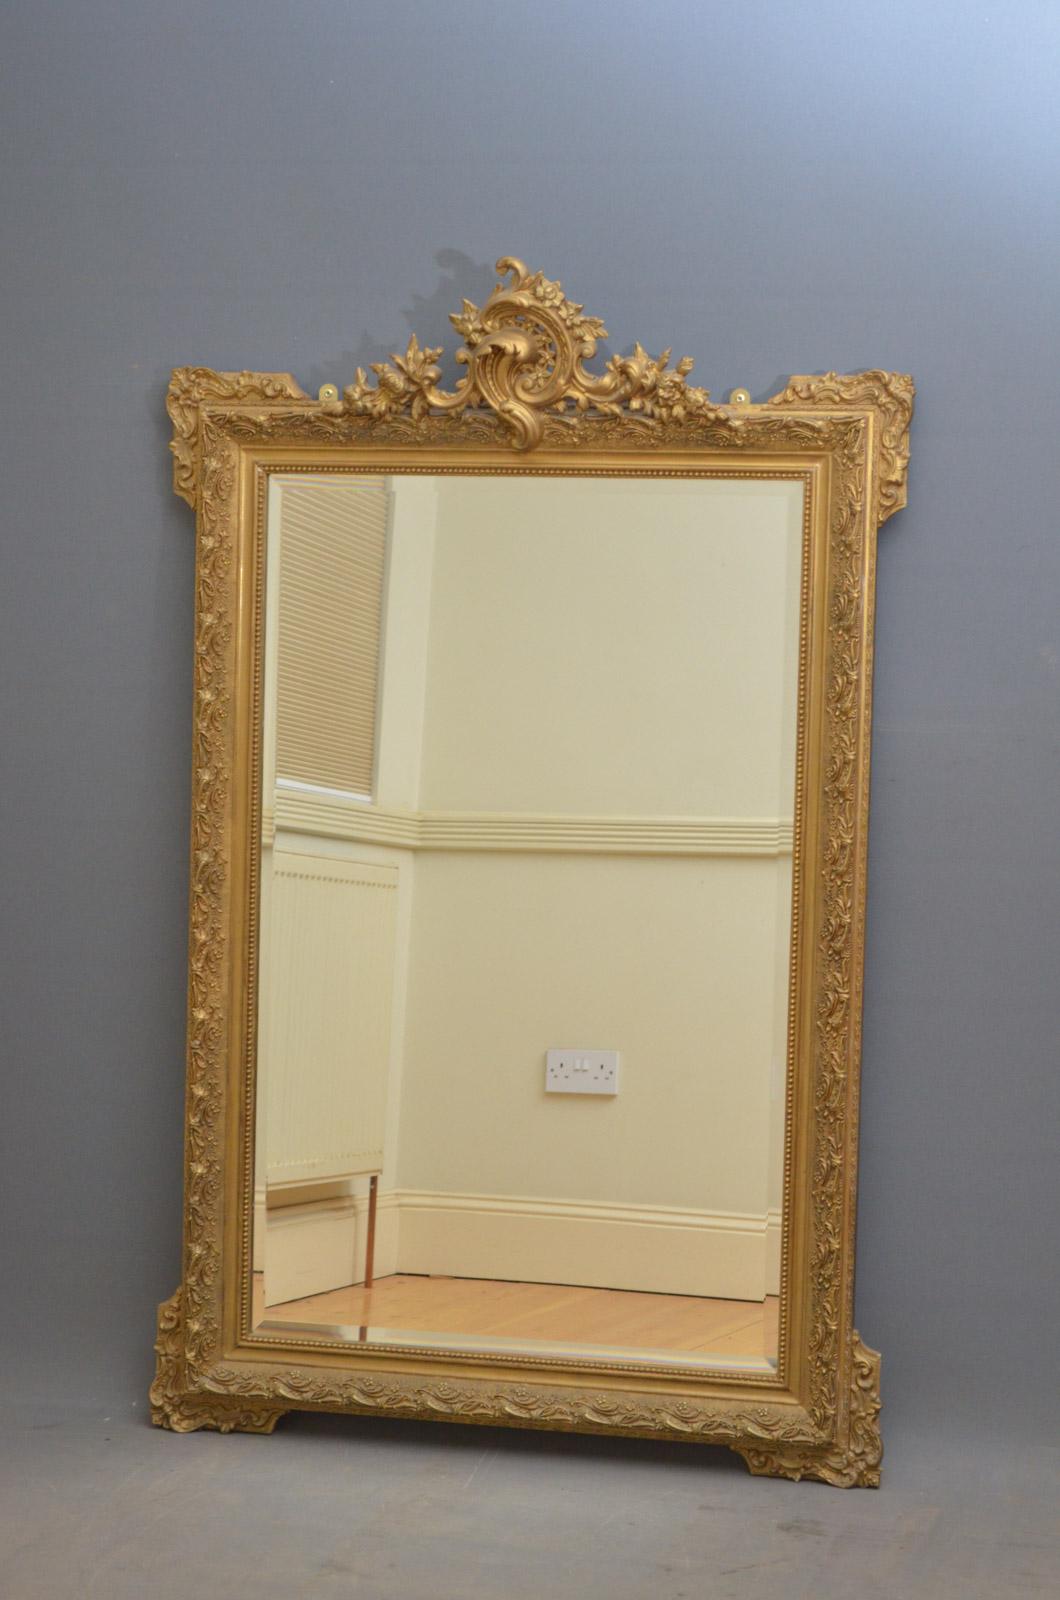 Sn4412 großer Wandspiegel aus vergoldetem Holz, mit außergewöhnlicher Verzierung mit Rollen, Blumen und Blättern auf der Oberseite und originaler, abgeschrägter Spiegelplatte in fein geschnitztem Rahmen. Dieser Spiegel wurde in der Vergangenheit